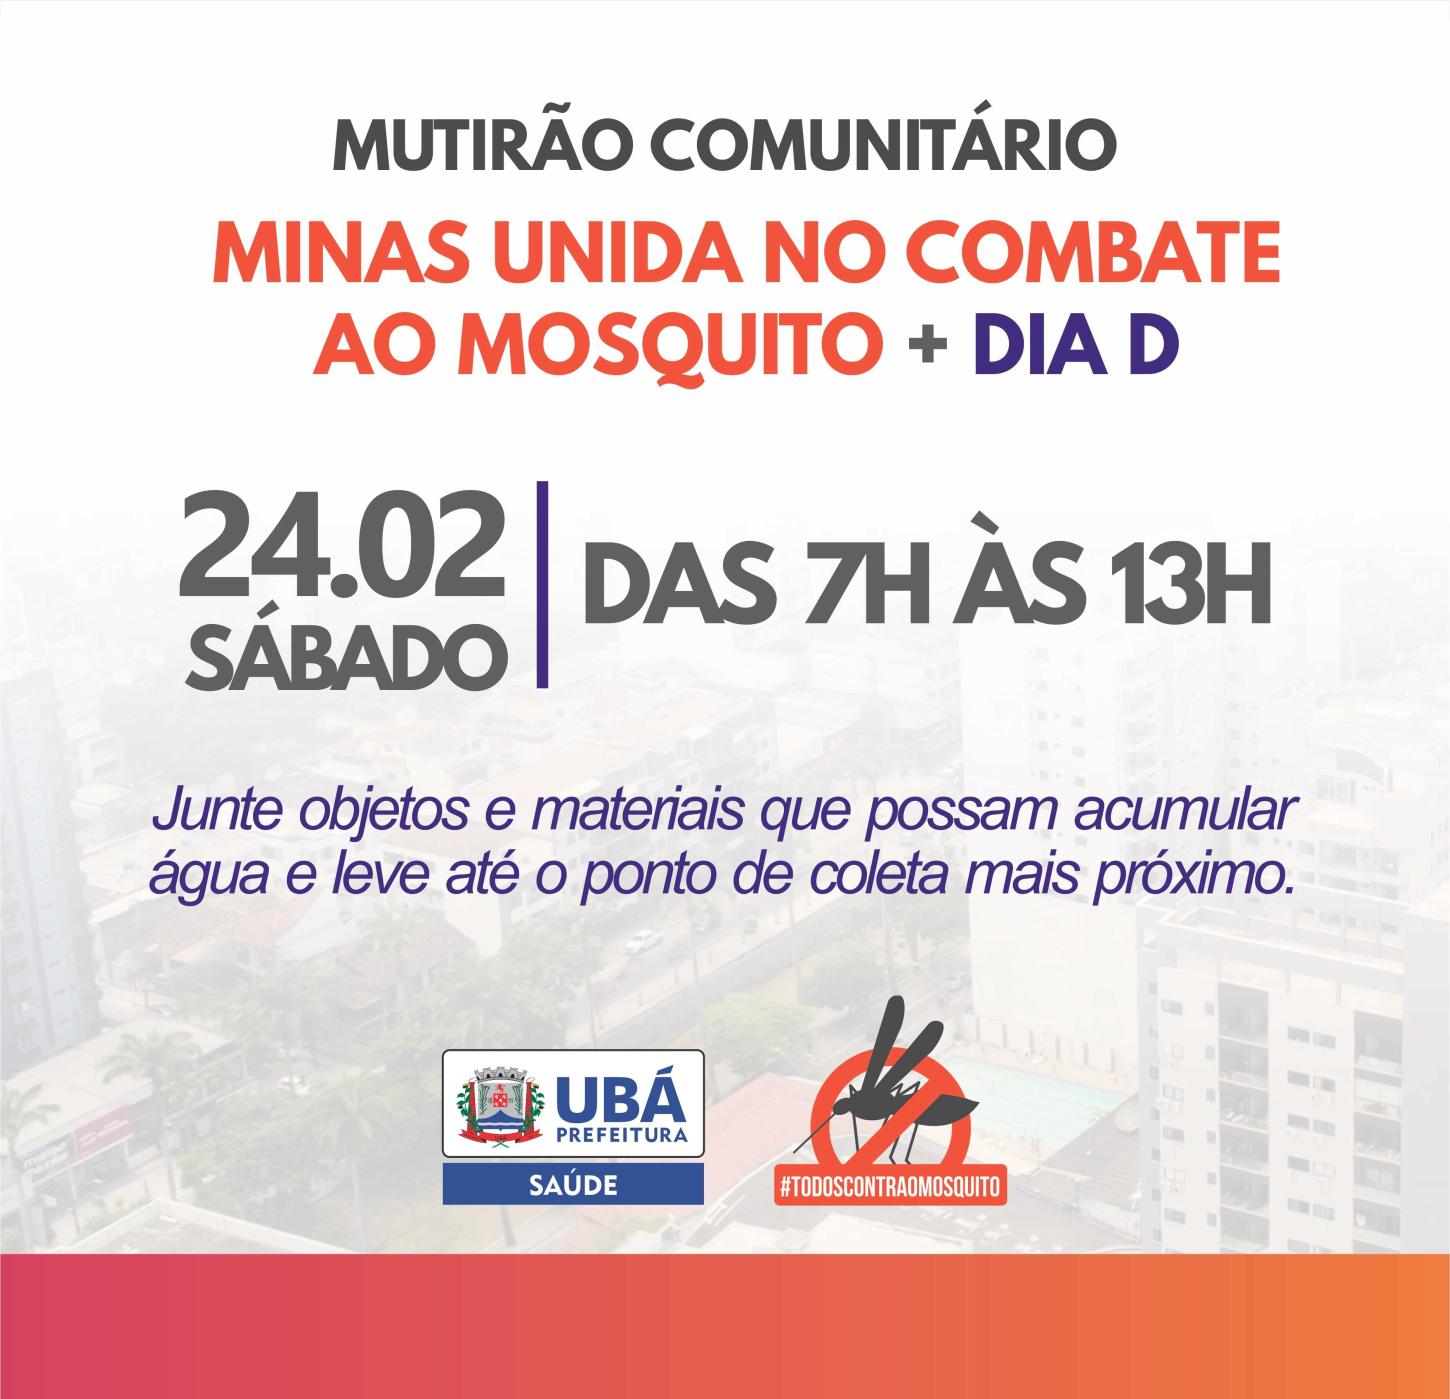 Mutirão comunitário em Ubá reúne esforços contra o Aedes neste sábado (24)